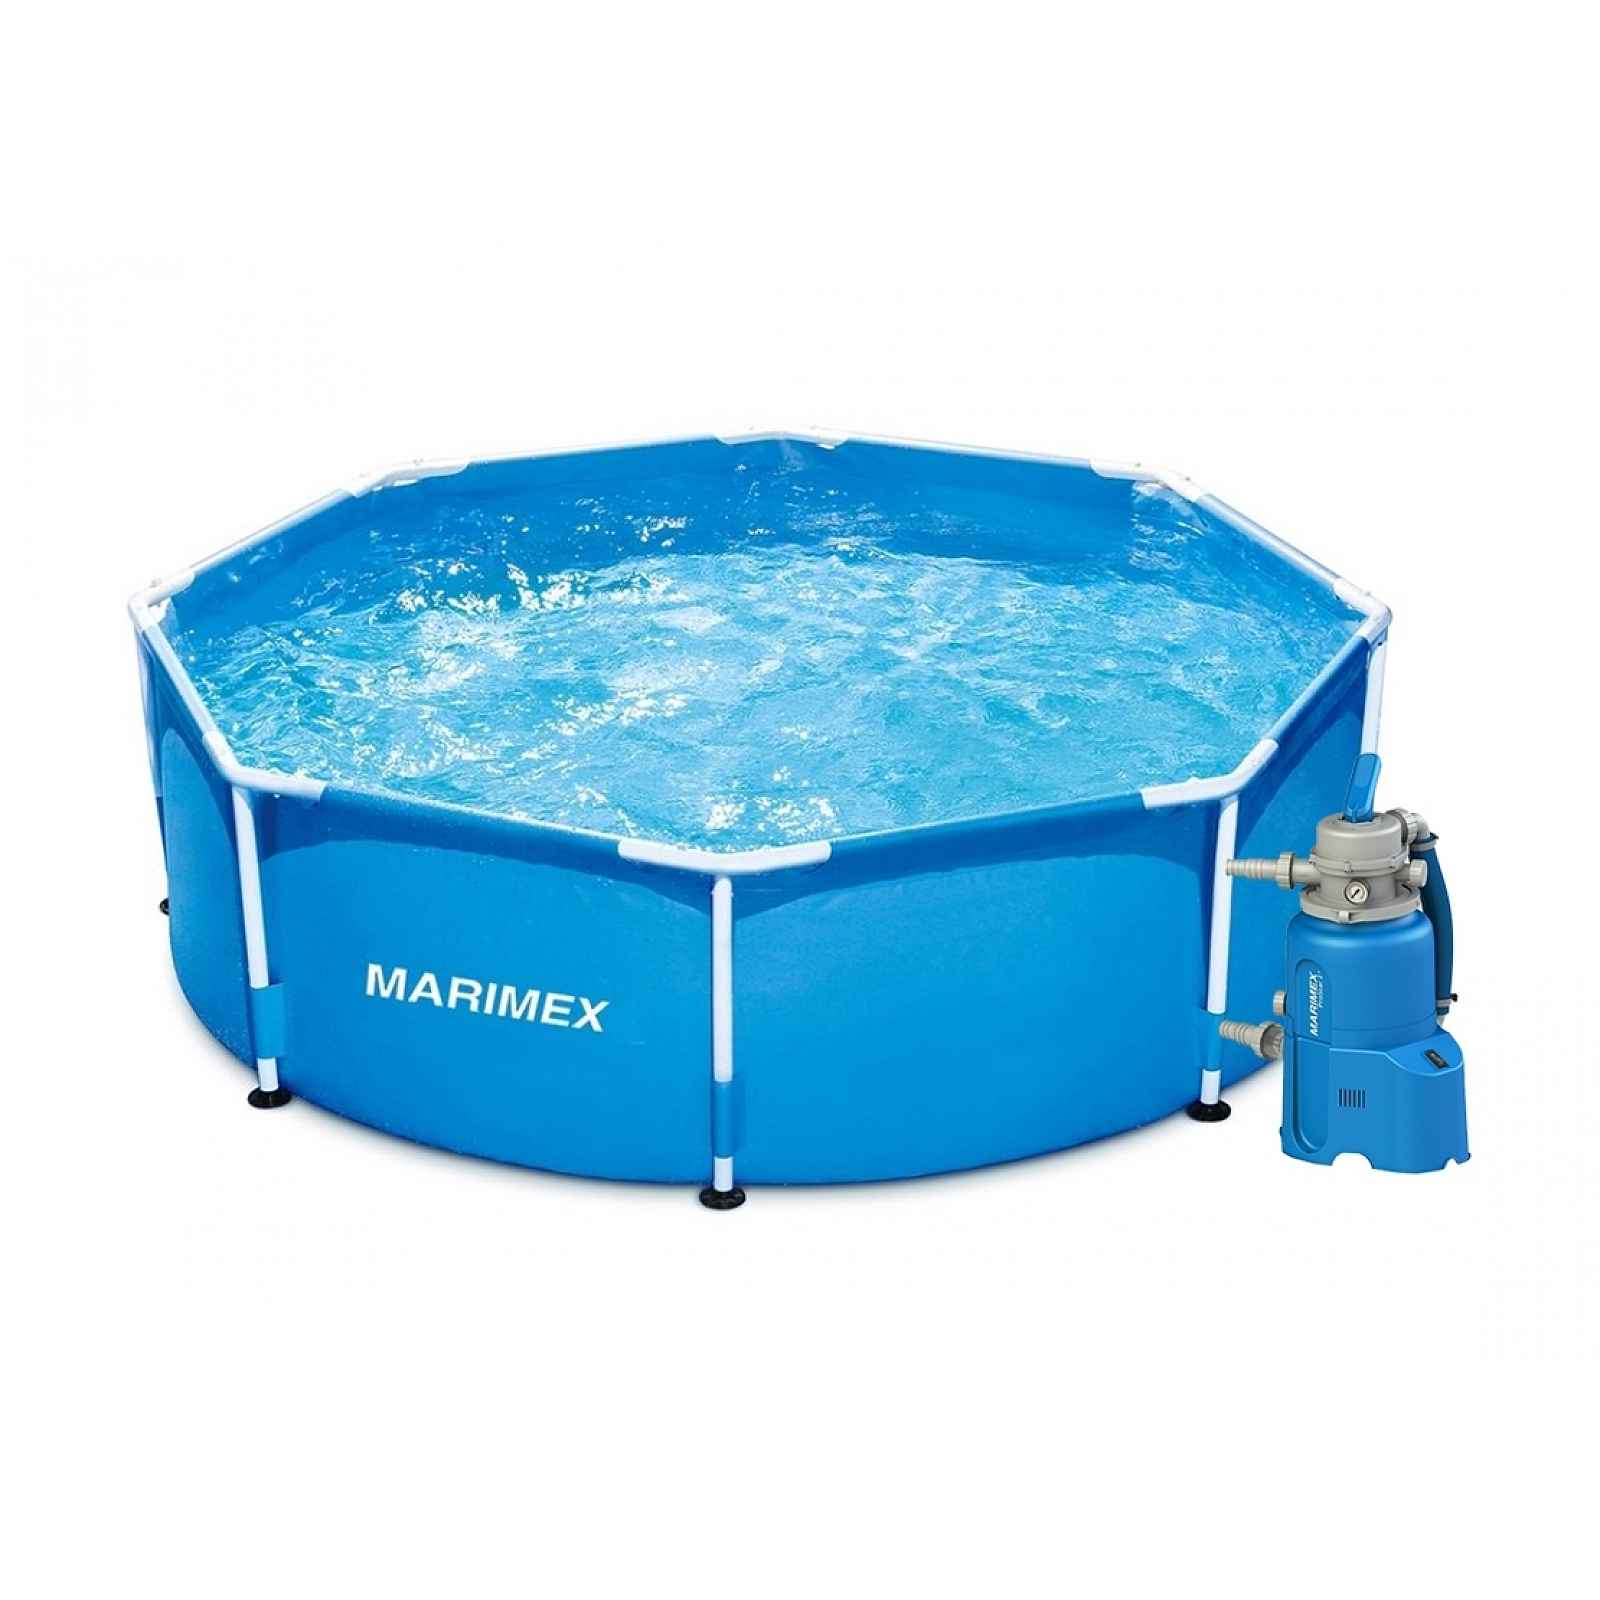 Marimex Bazén Florida 2,44x0,76 m s pískovou filtrací